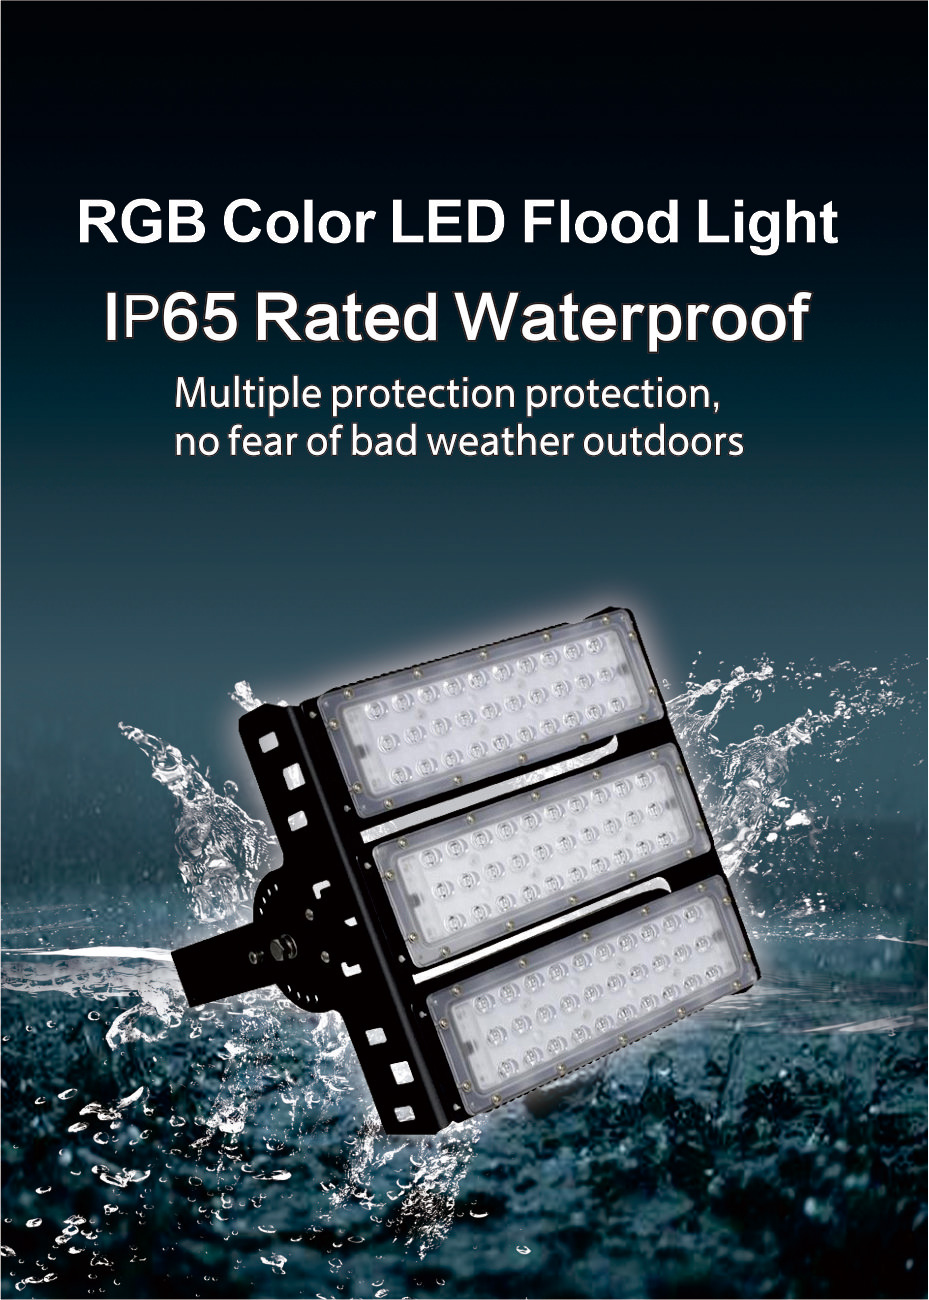 rgb flood light 150w.jpg